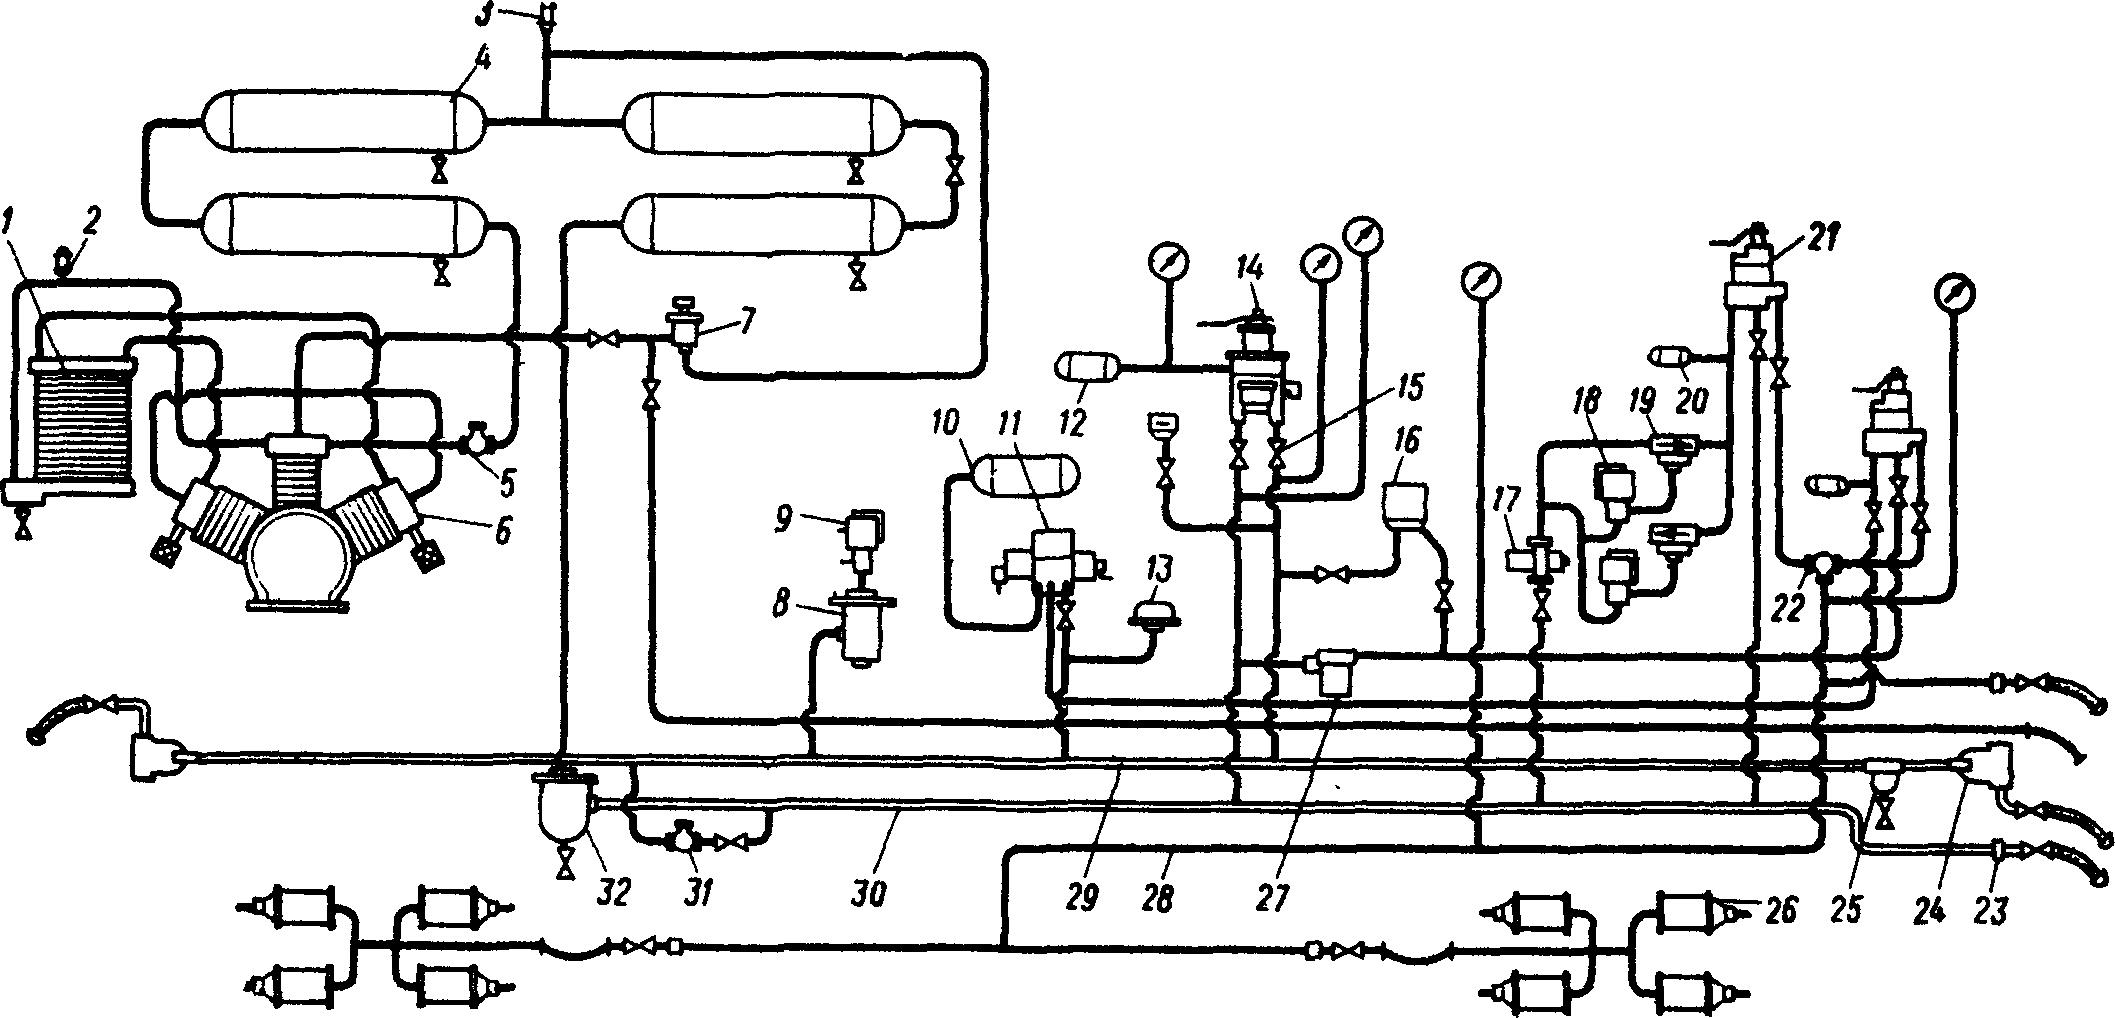 Пневматическая схема тормозного оборудования тепловоза ЧМЭЗ с двумя постами управления